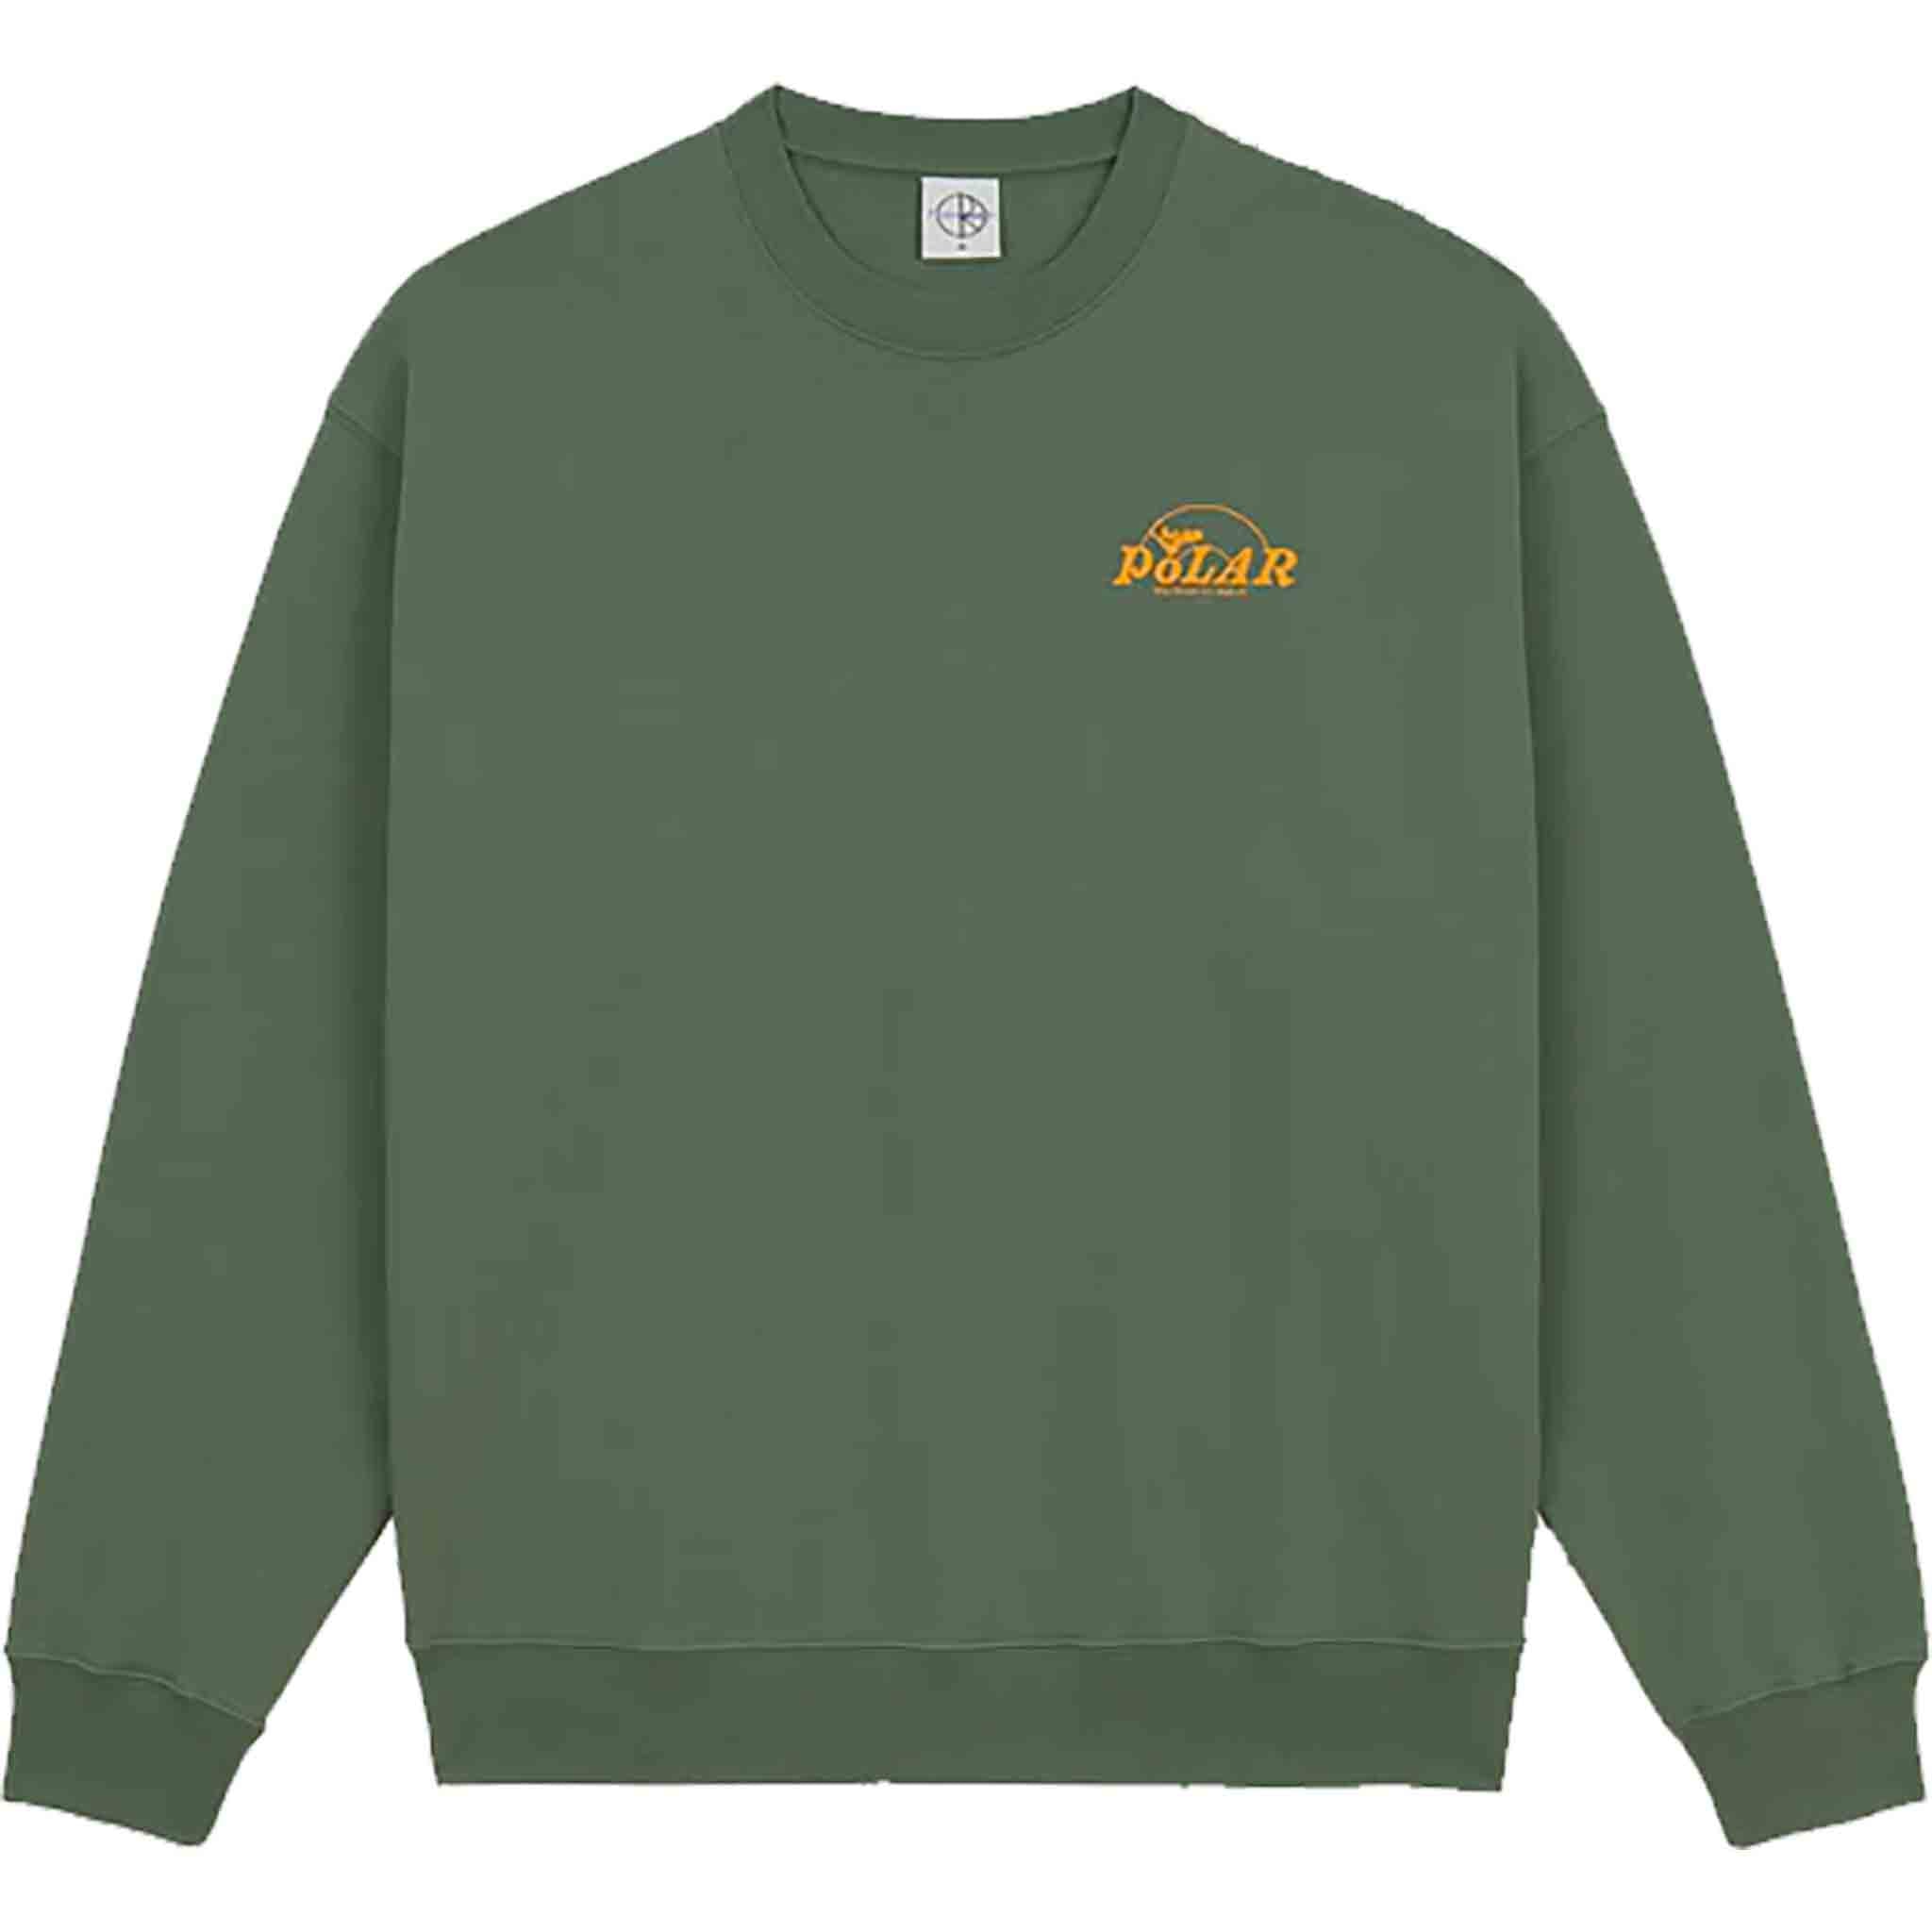 Polar Dave Crewneck Dreams Jade Green Sweatshirts